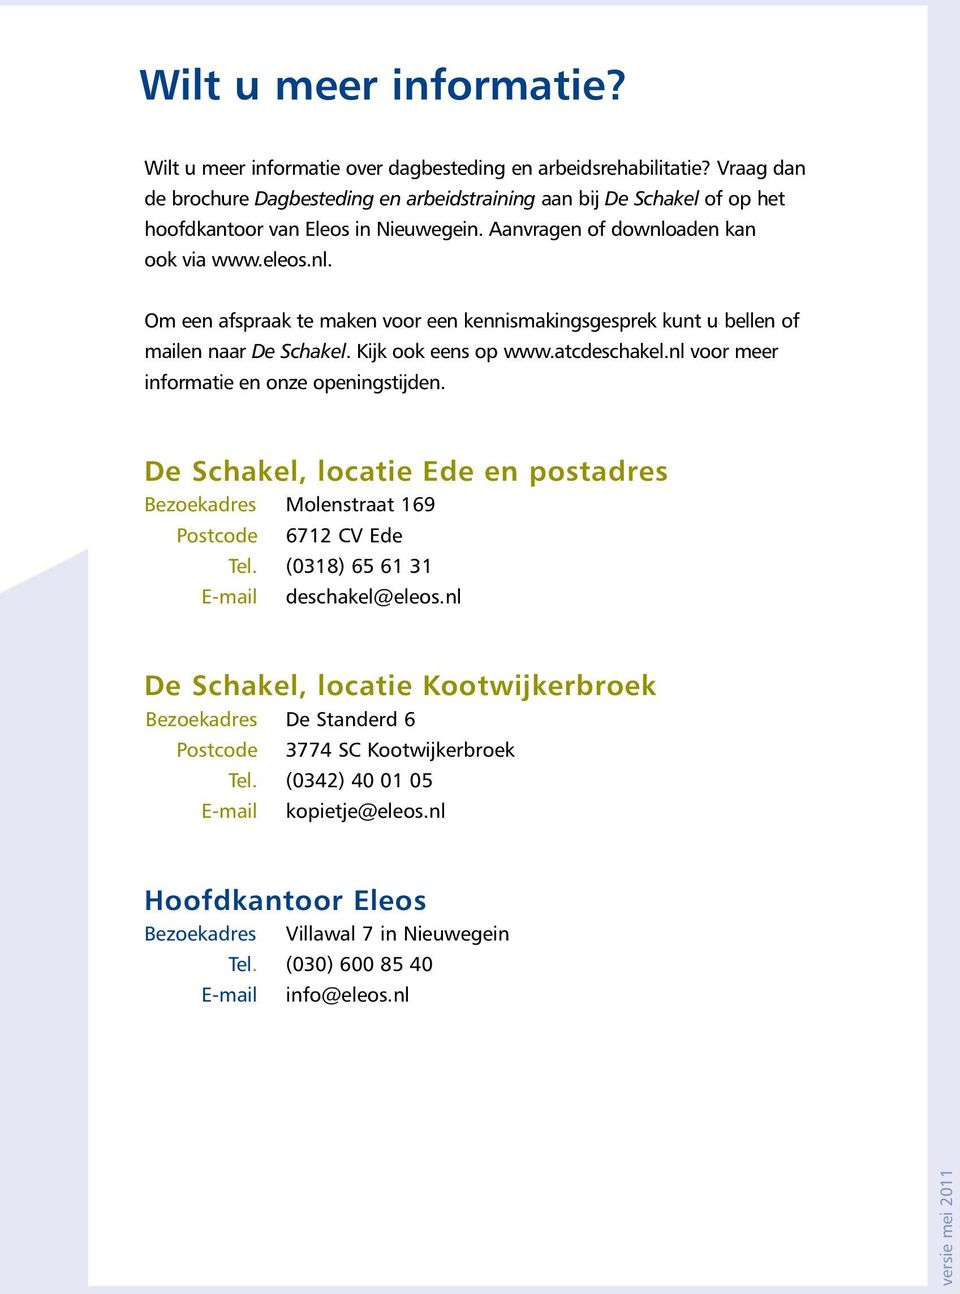 aden kan ook via www.eleos.nl. Om een afspraak te maken voor een kennismakingsgesprek kunt u bellen of mailen naar De Schakel. Kijk ook eens op www.atcdeschakel.